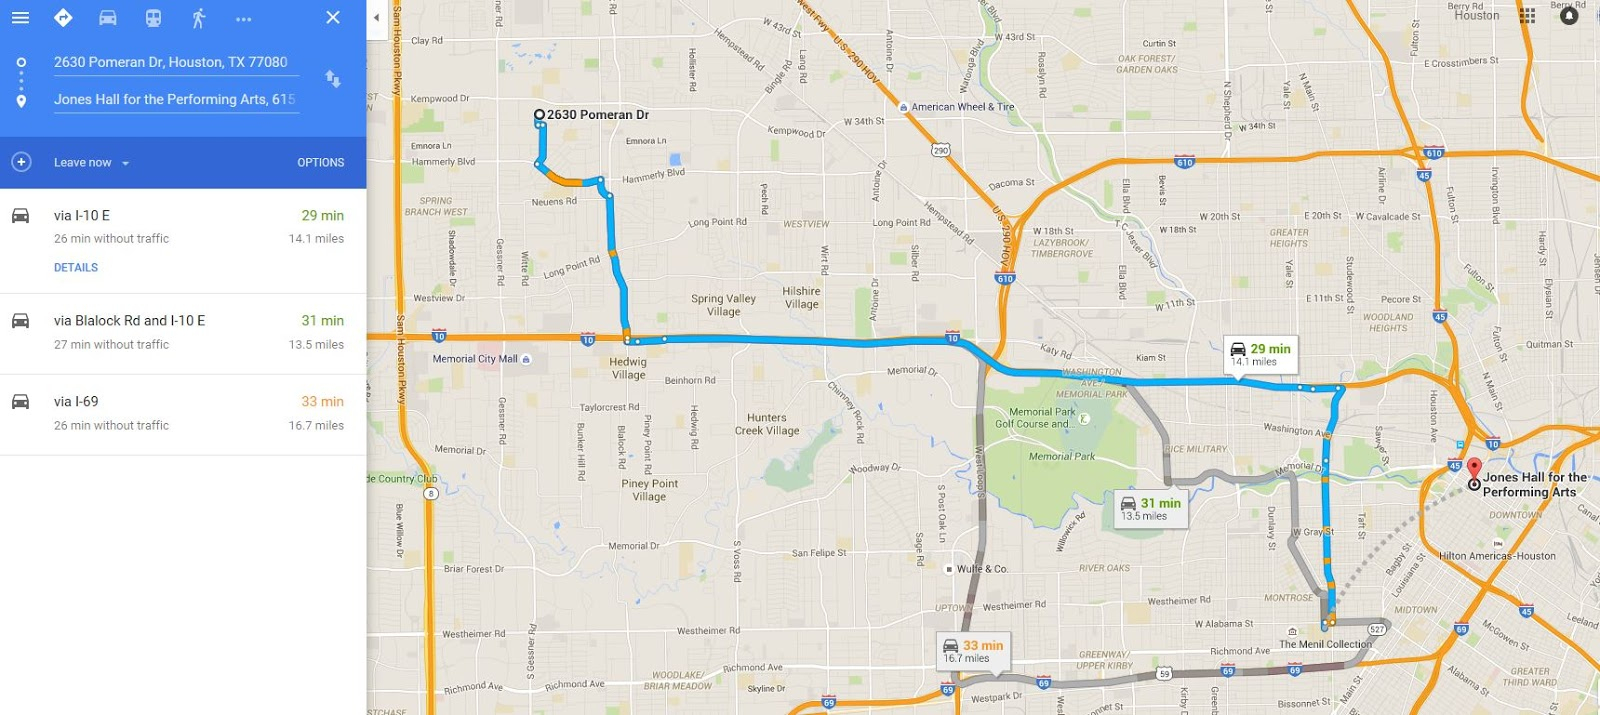 Houston Texas Google Maps | Business Ideas 2013 - Google Maps Houston Texas